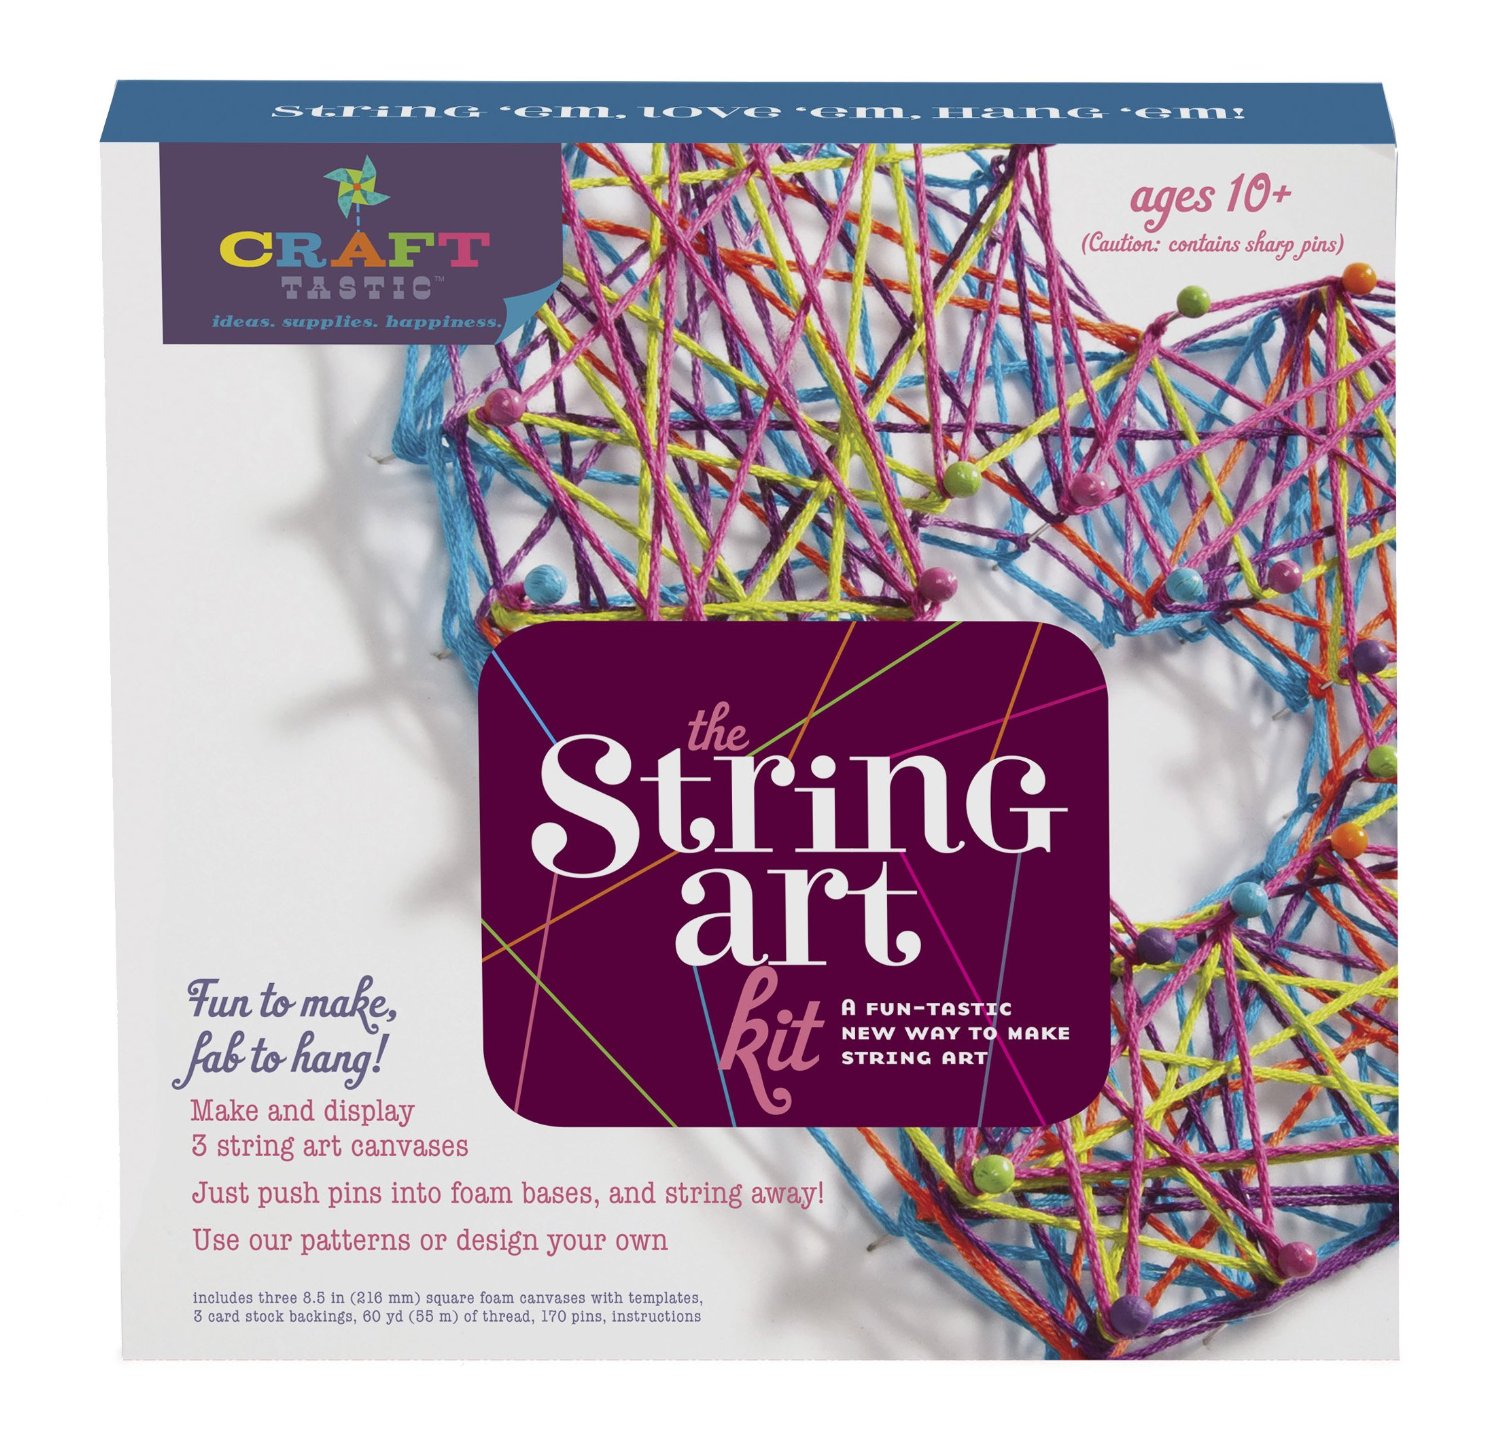 string art kit